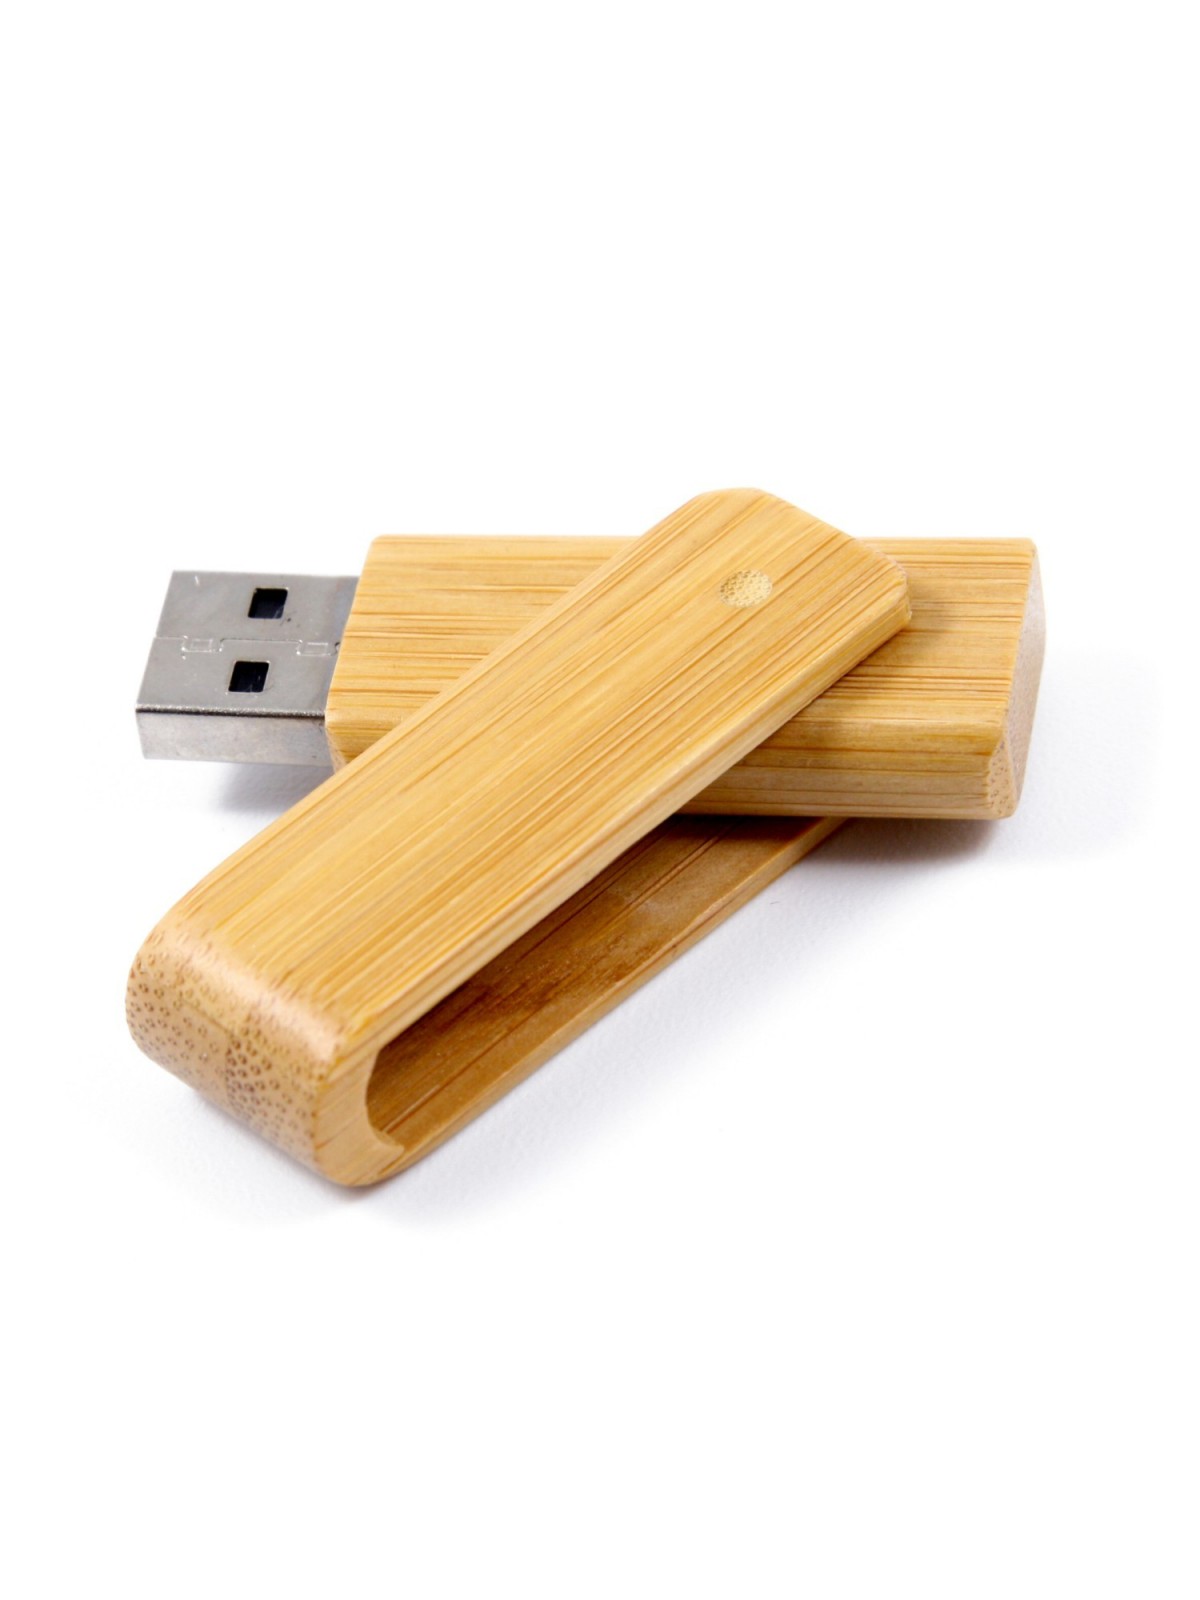 17-986 Clé USB pivotante en bois personnalisé